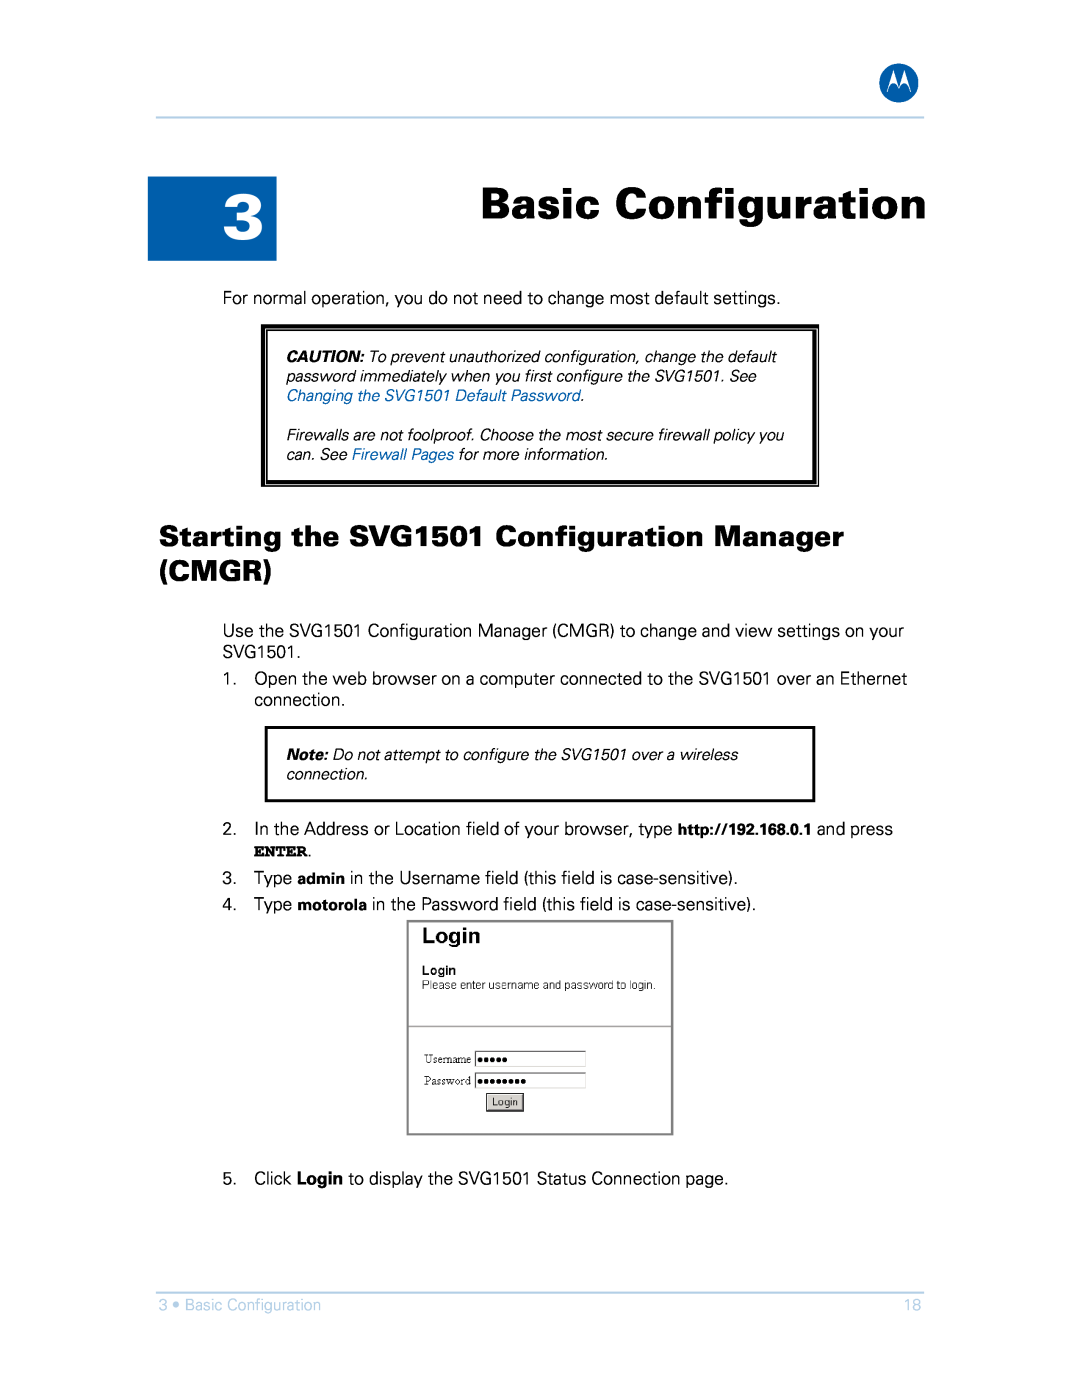 Motorola SVG1501UE, SVG1501E manual Basic Configuration, Starting the SVG1501 Configuration Manager CMGR, Enter 